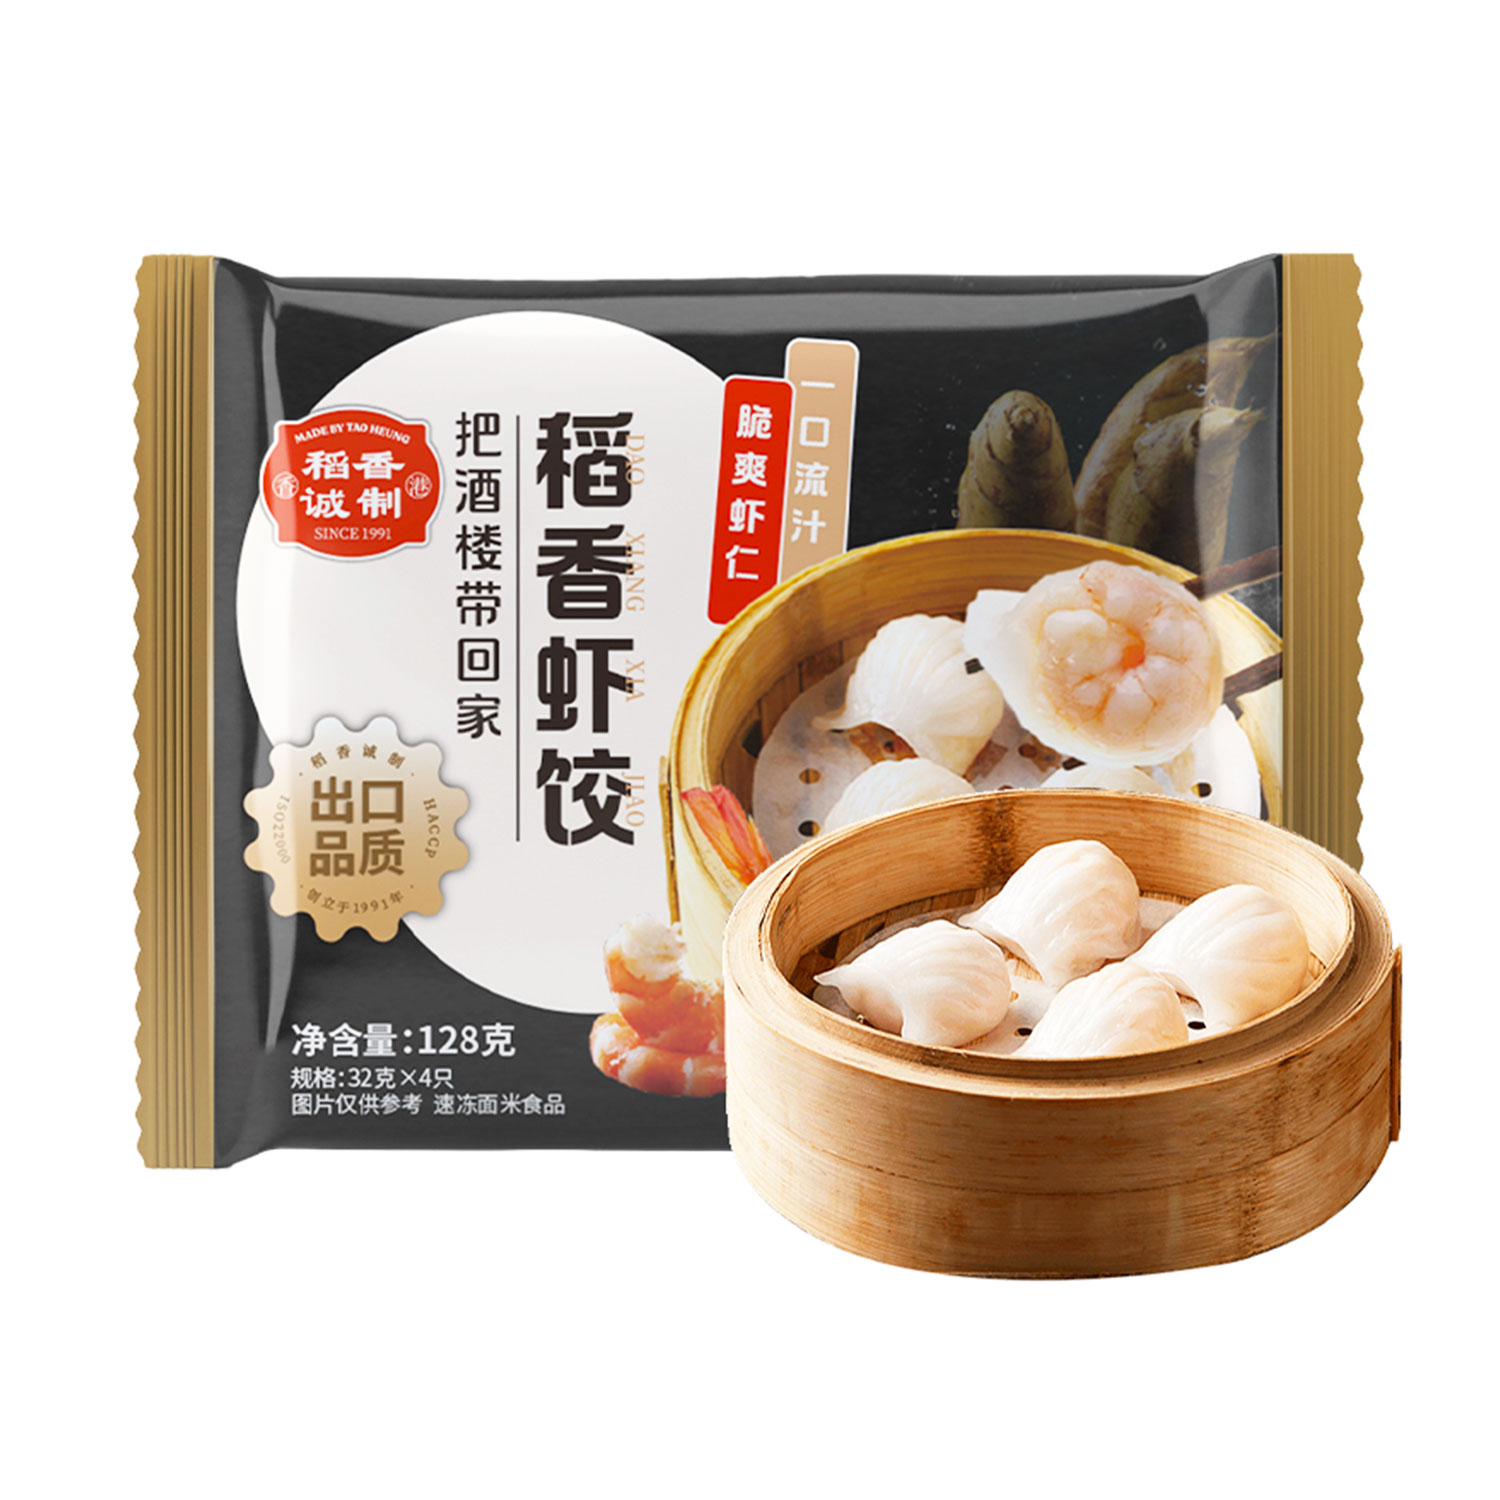 Made Byt Tao Heung Prawn Dumpling 32g-eBest-Dumplings,Frozen food